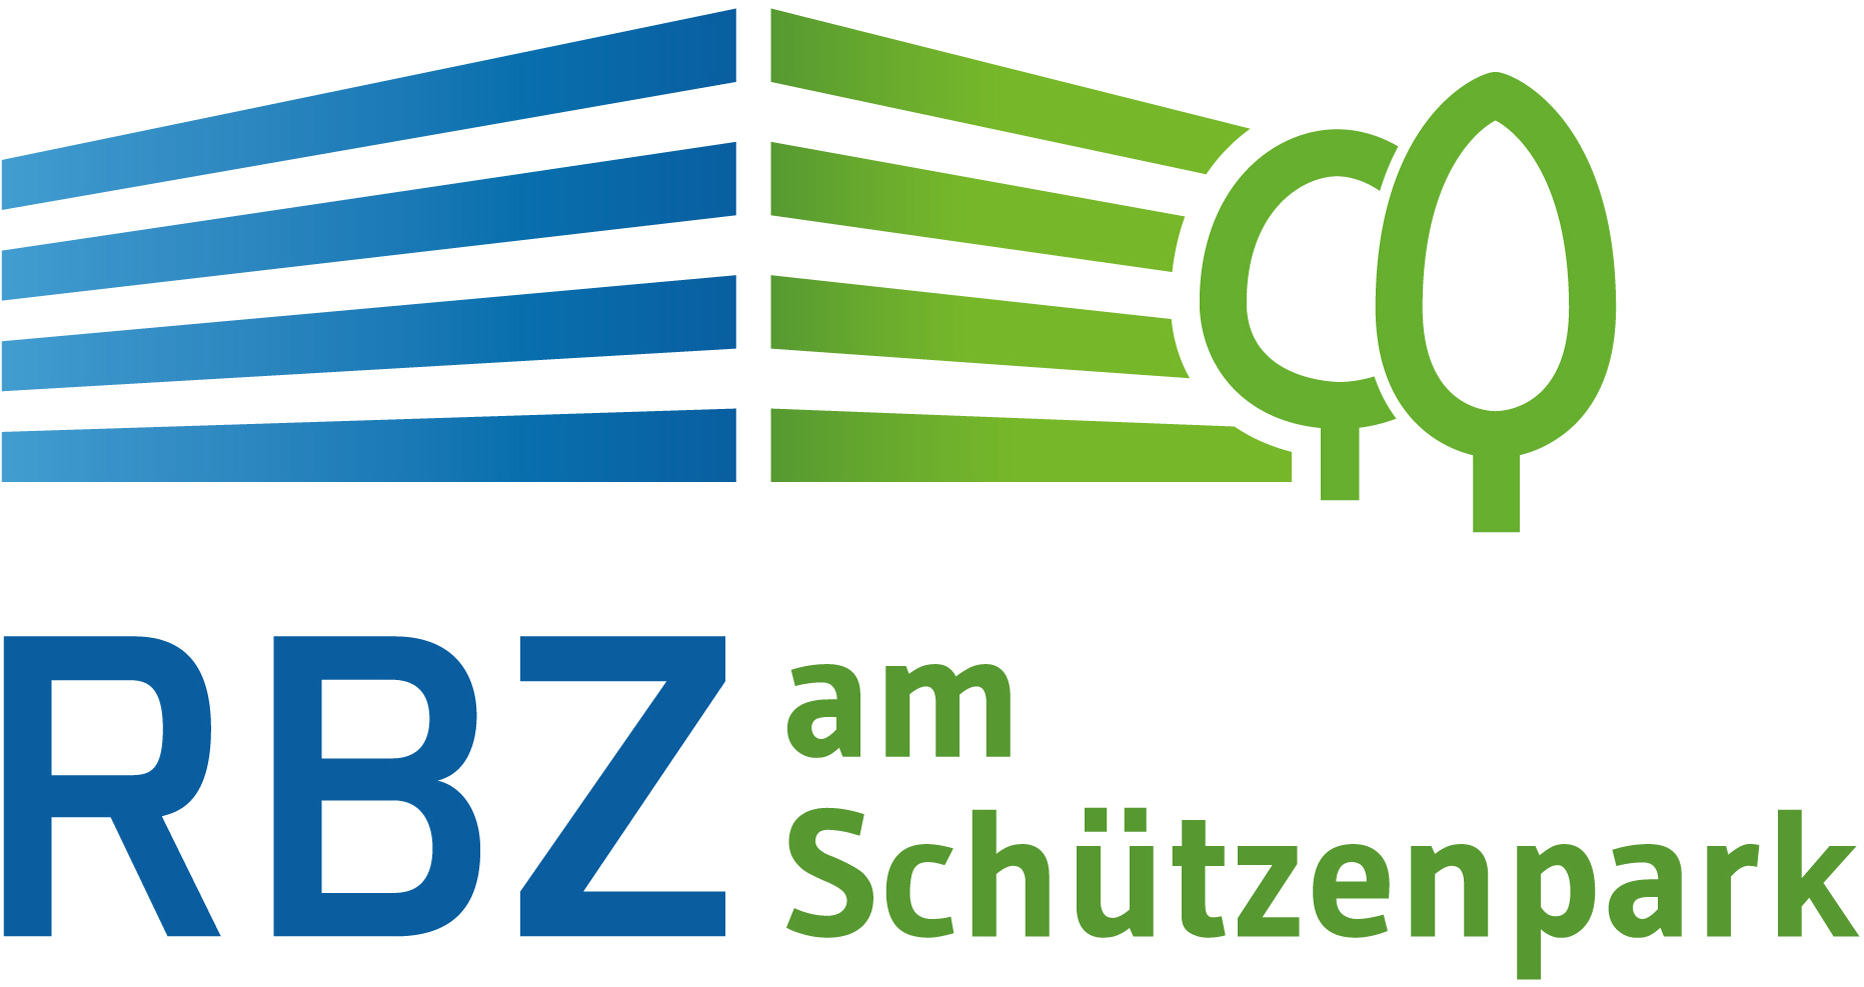 rbz asp logo 2018